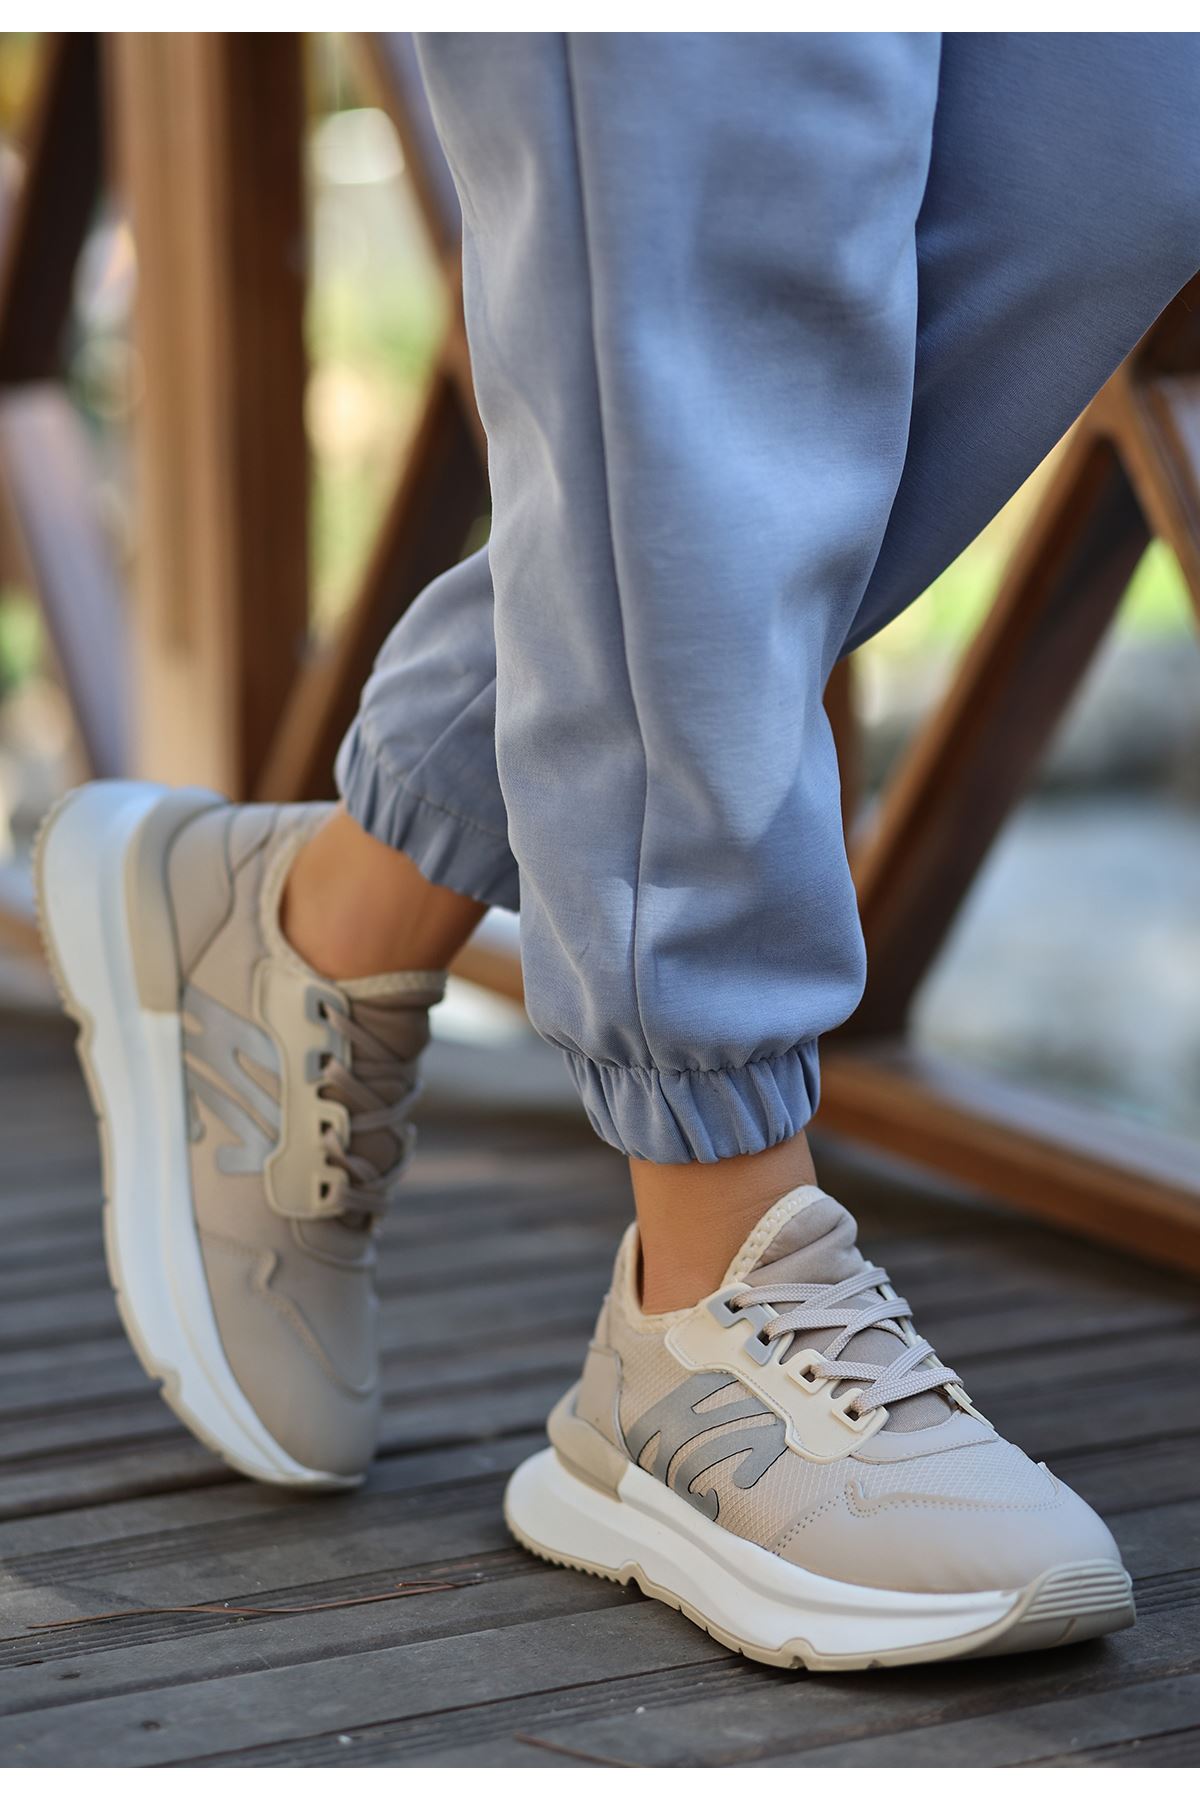 Salamanca Mat Deri Fileli Bağcıklı Kadın Sneakers Spor Ayakkabı Ten